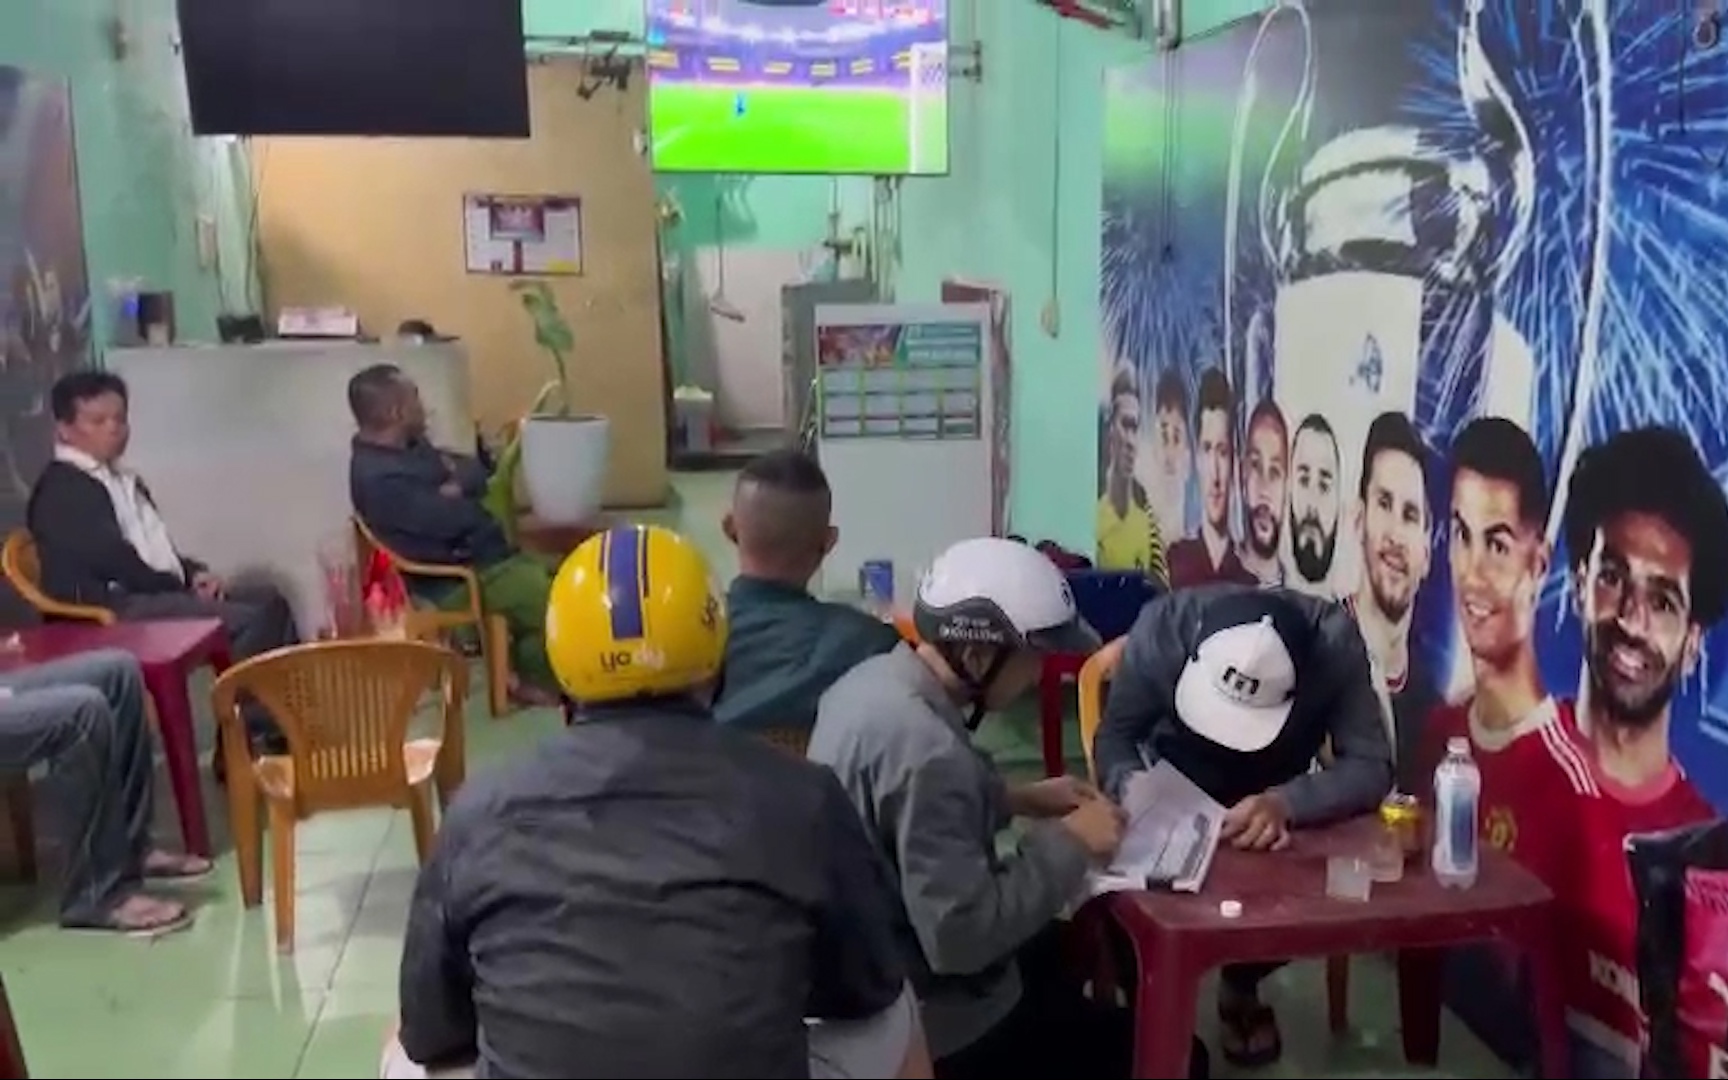 Video: Phá ổ cá độ bóng đá tiền tỷ tại quán cà phê ở Huế